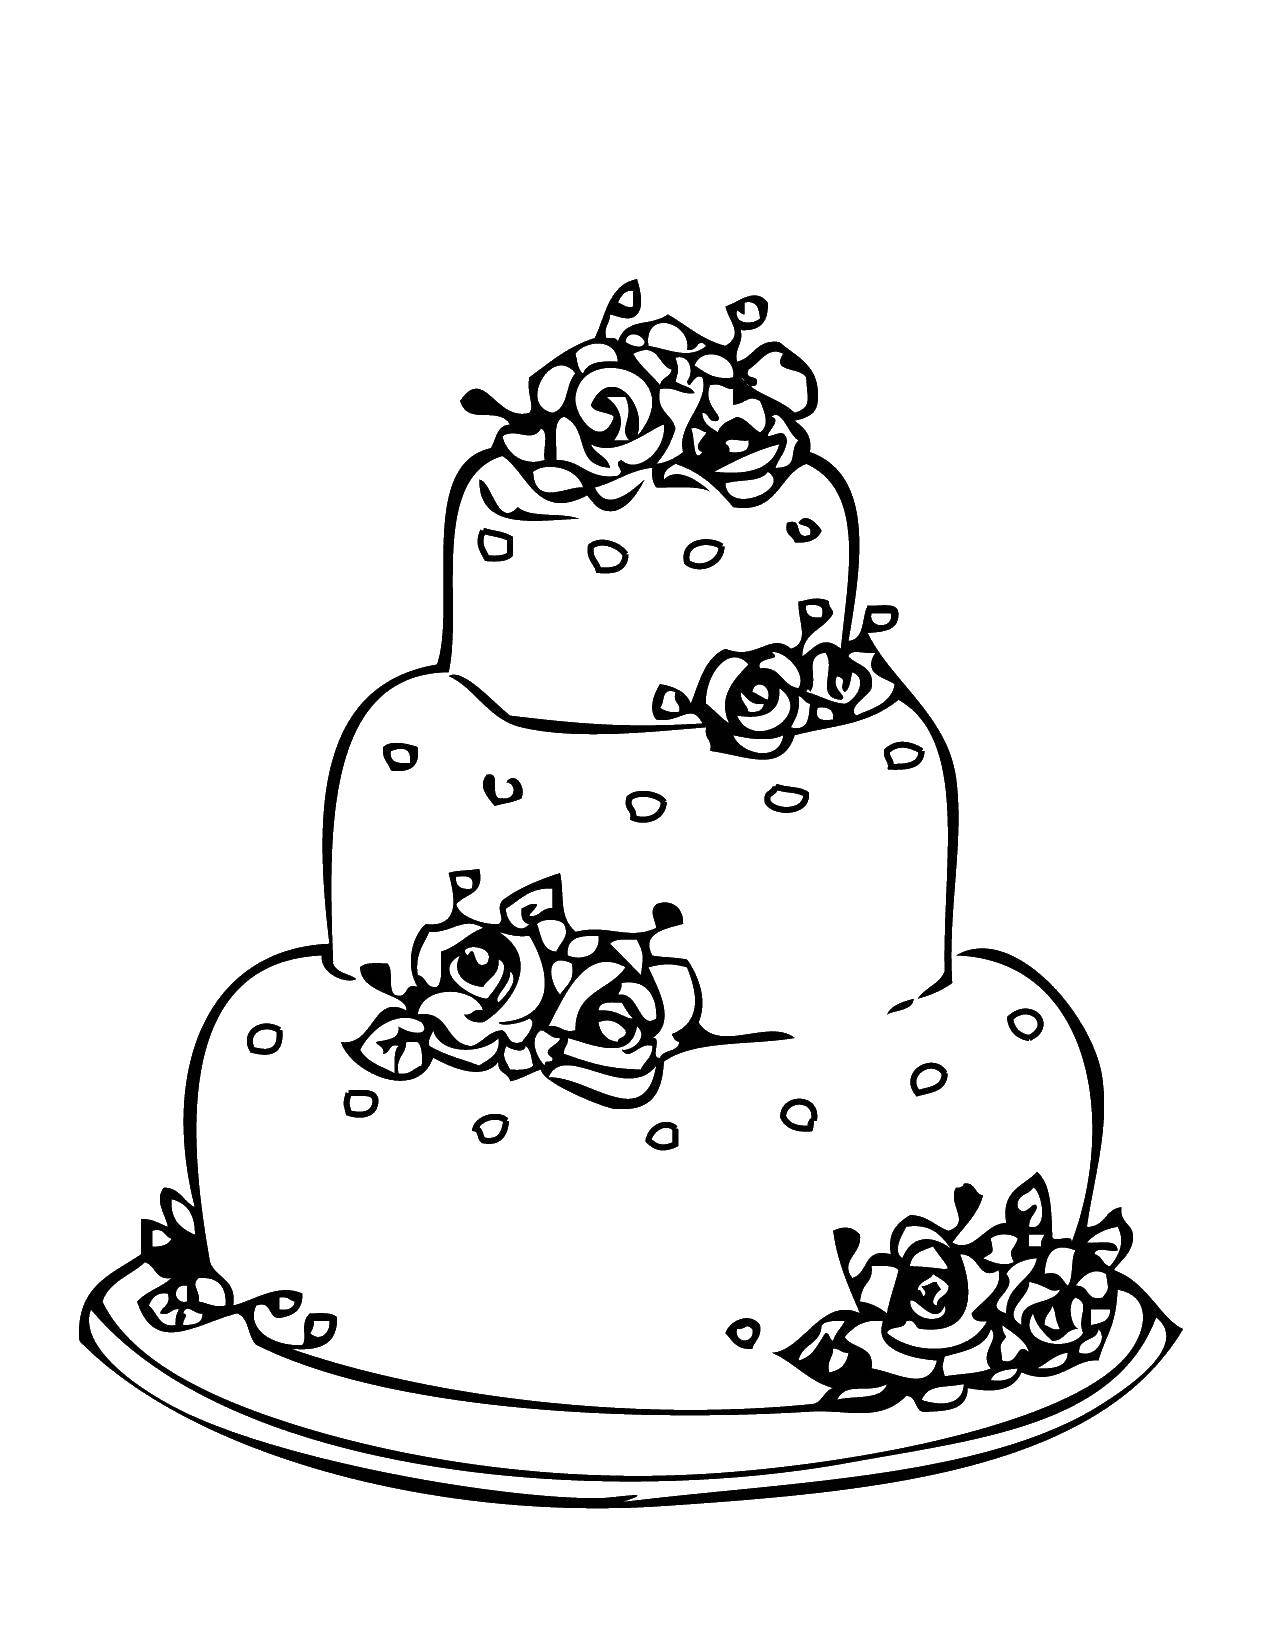 Розмальовки  Весільний тортик з трояндами. Завантажити розмальовку торти, солодощі, троянди.  Роздрукувати ,торти,